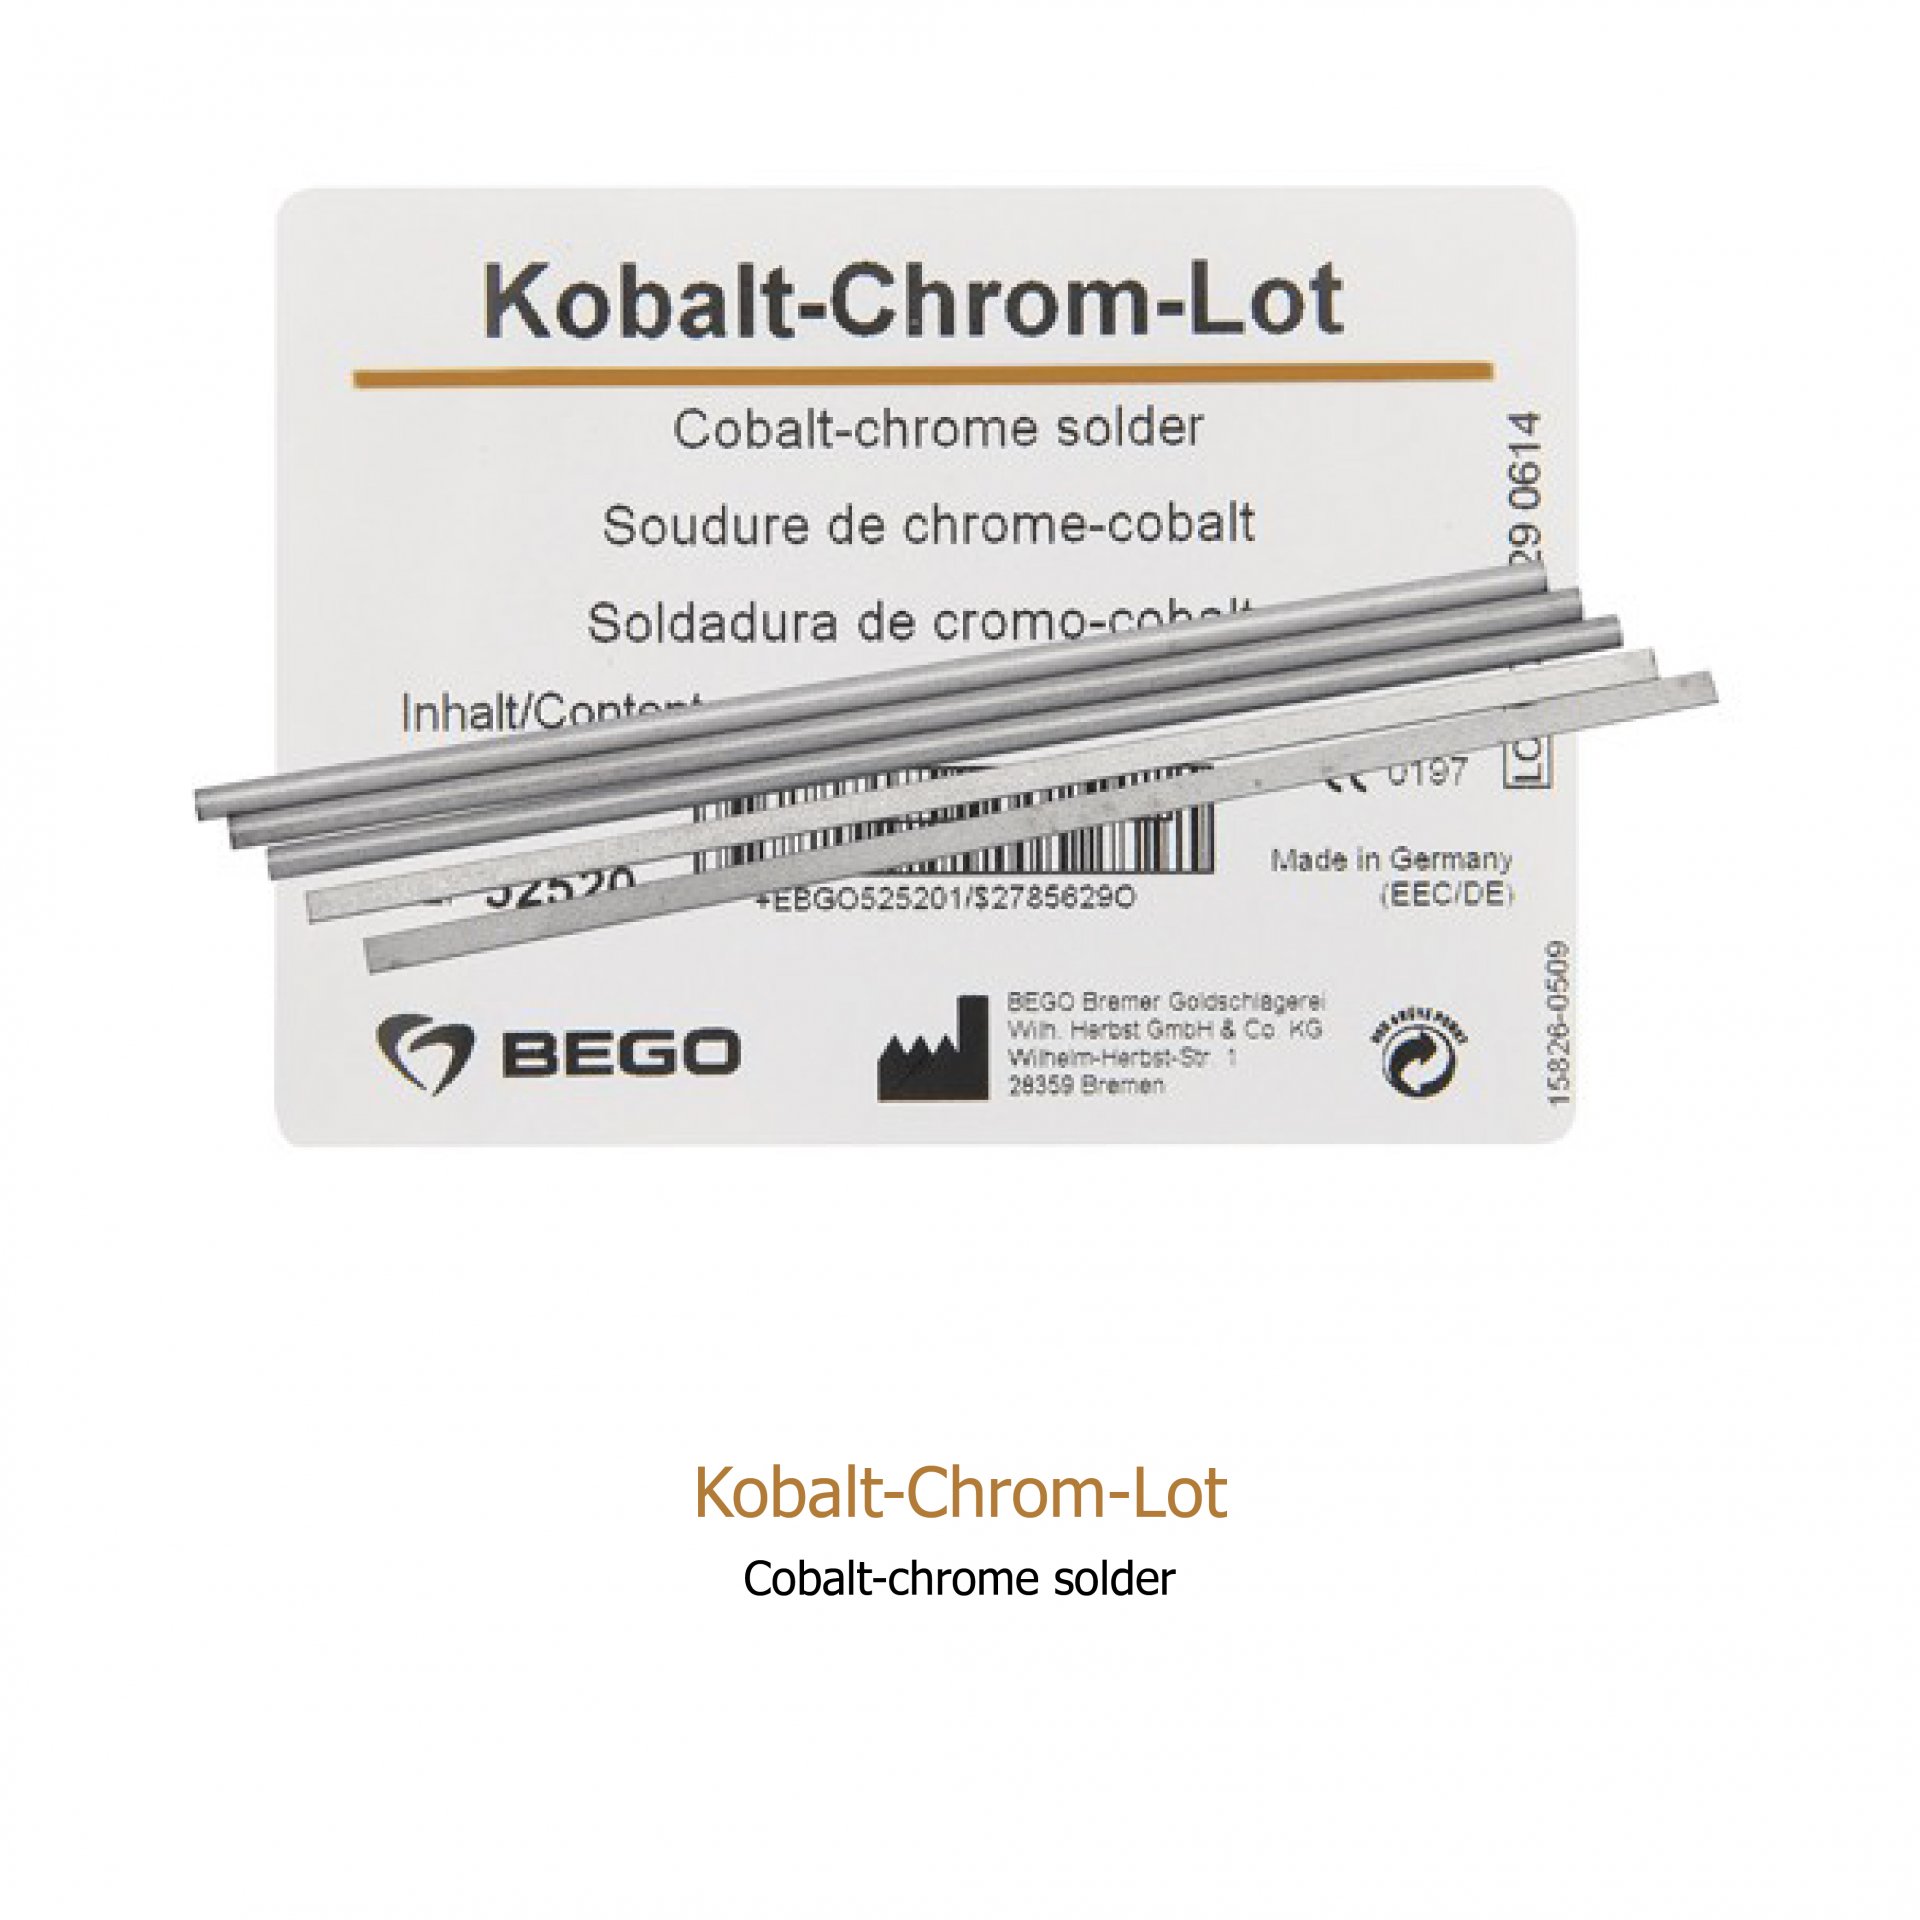 Kobalt-Chrom-Lot